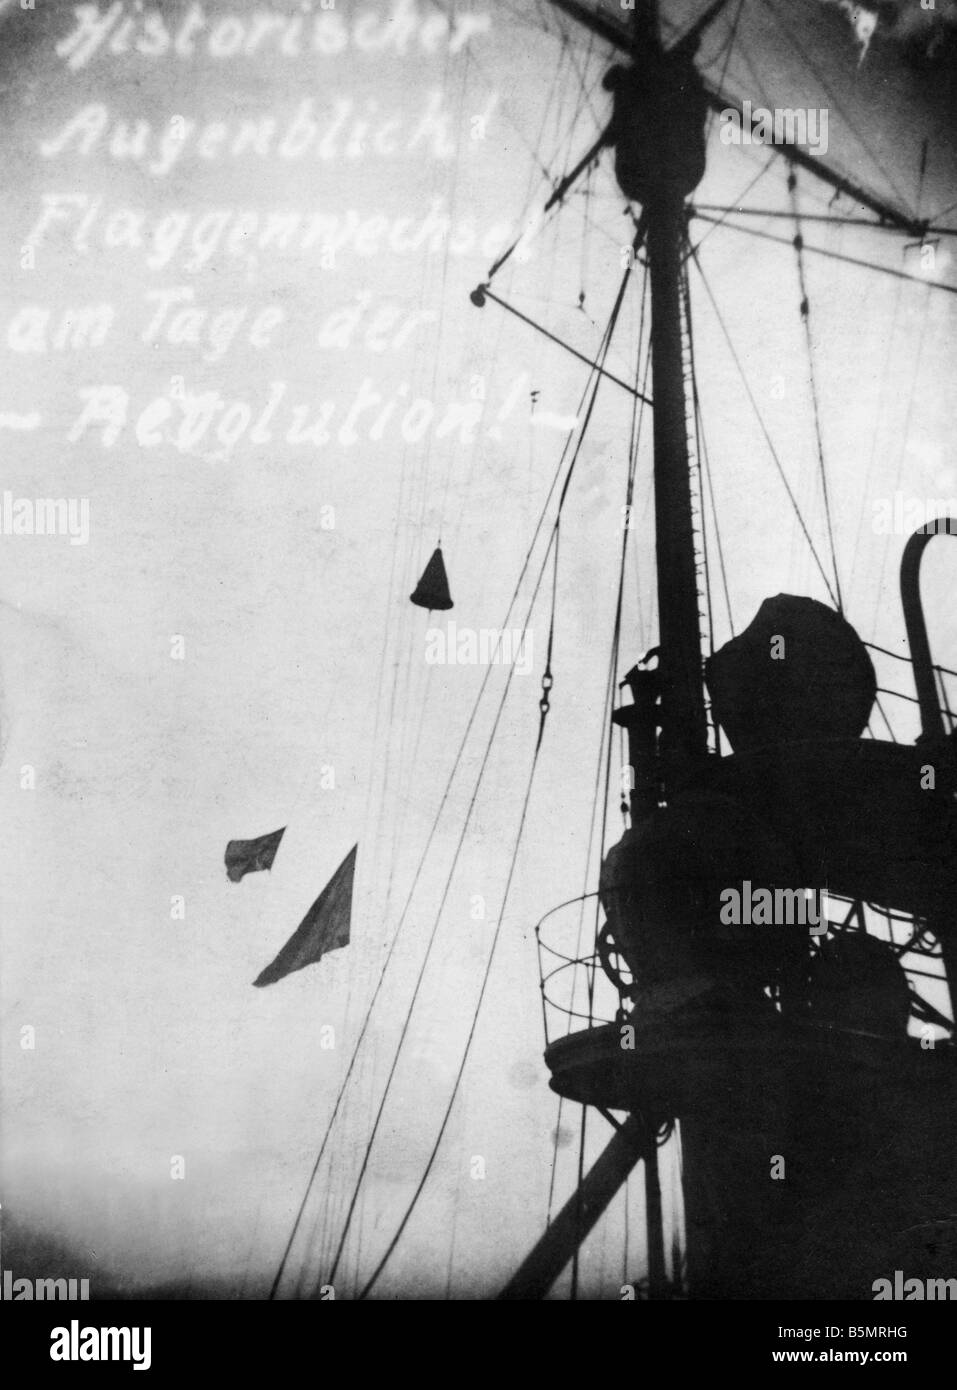 9 1918 11 10 A1 3 e Nov Rev 1918 Cambiamento di bandiera dalla flotta rivoluzione Novembre 1918 momento storico cambiamento di bandiera il giorno della Foto Stock